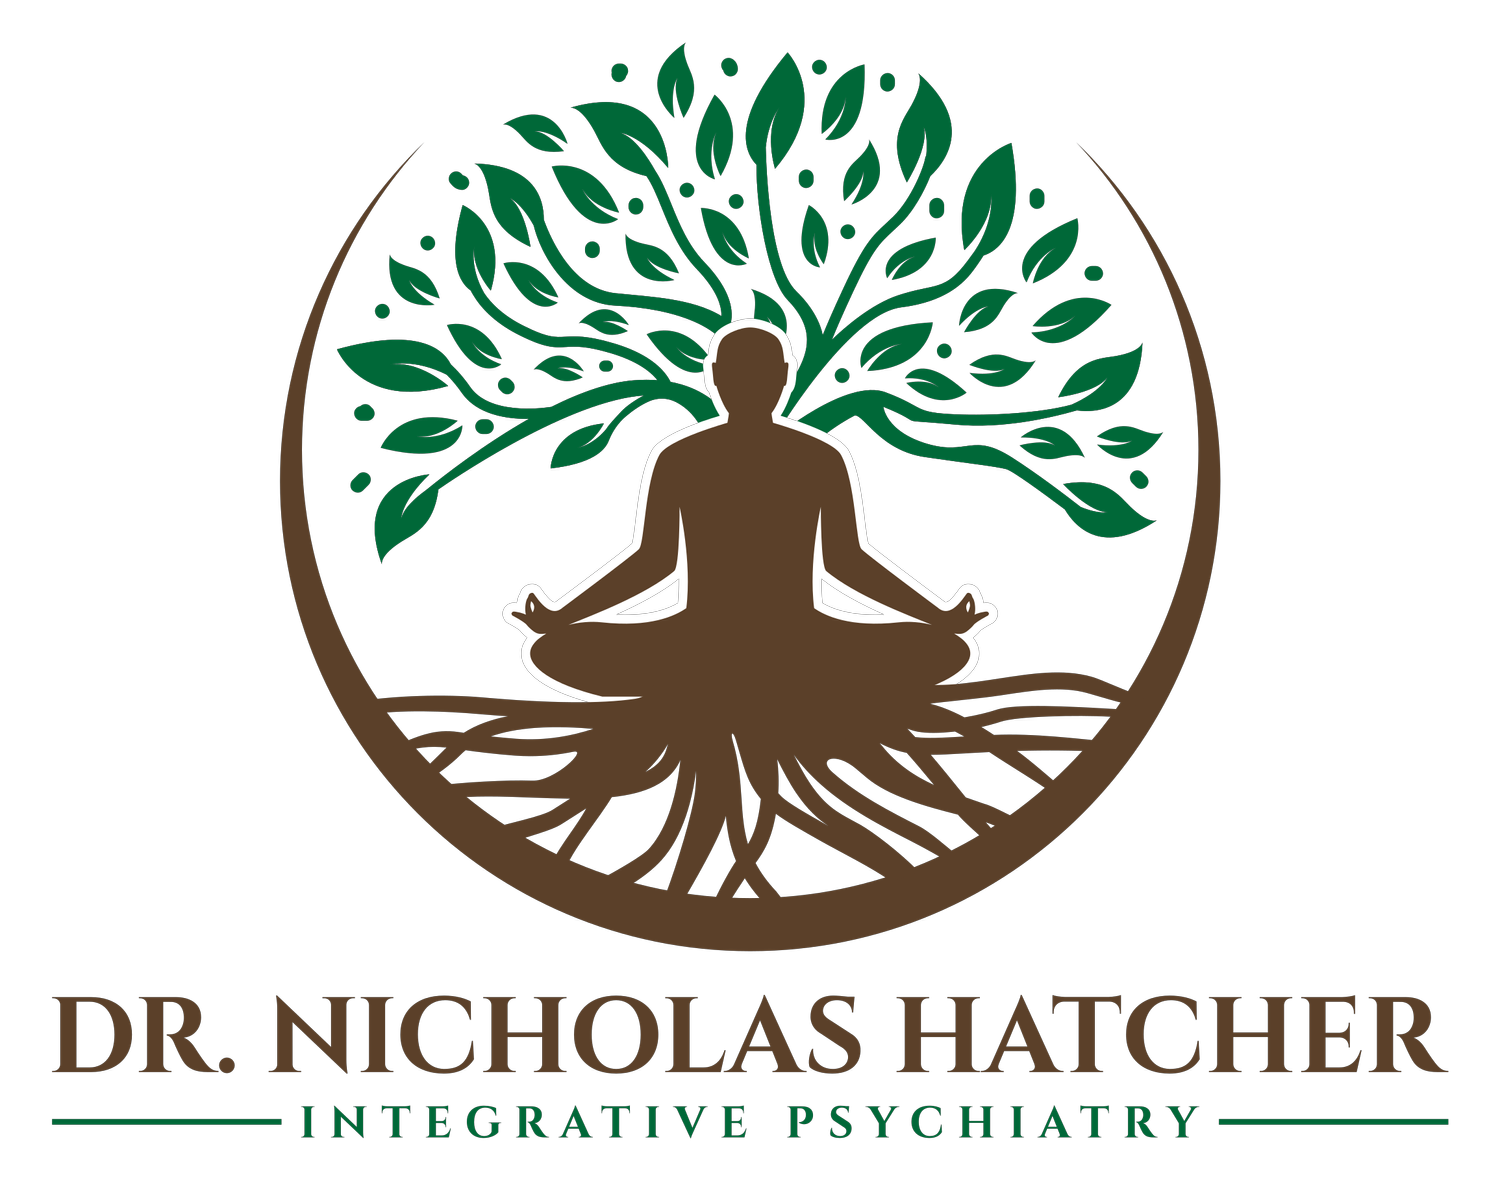 Dr. Nicholas Hatcher, DNP